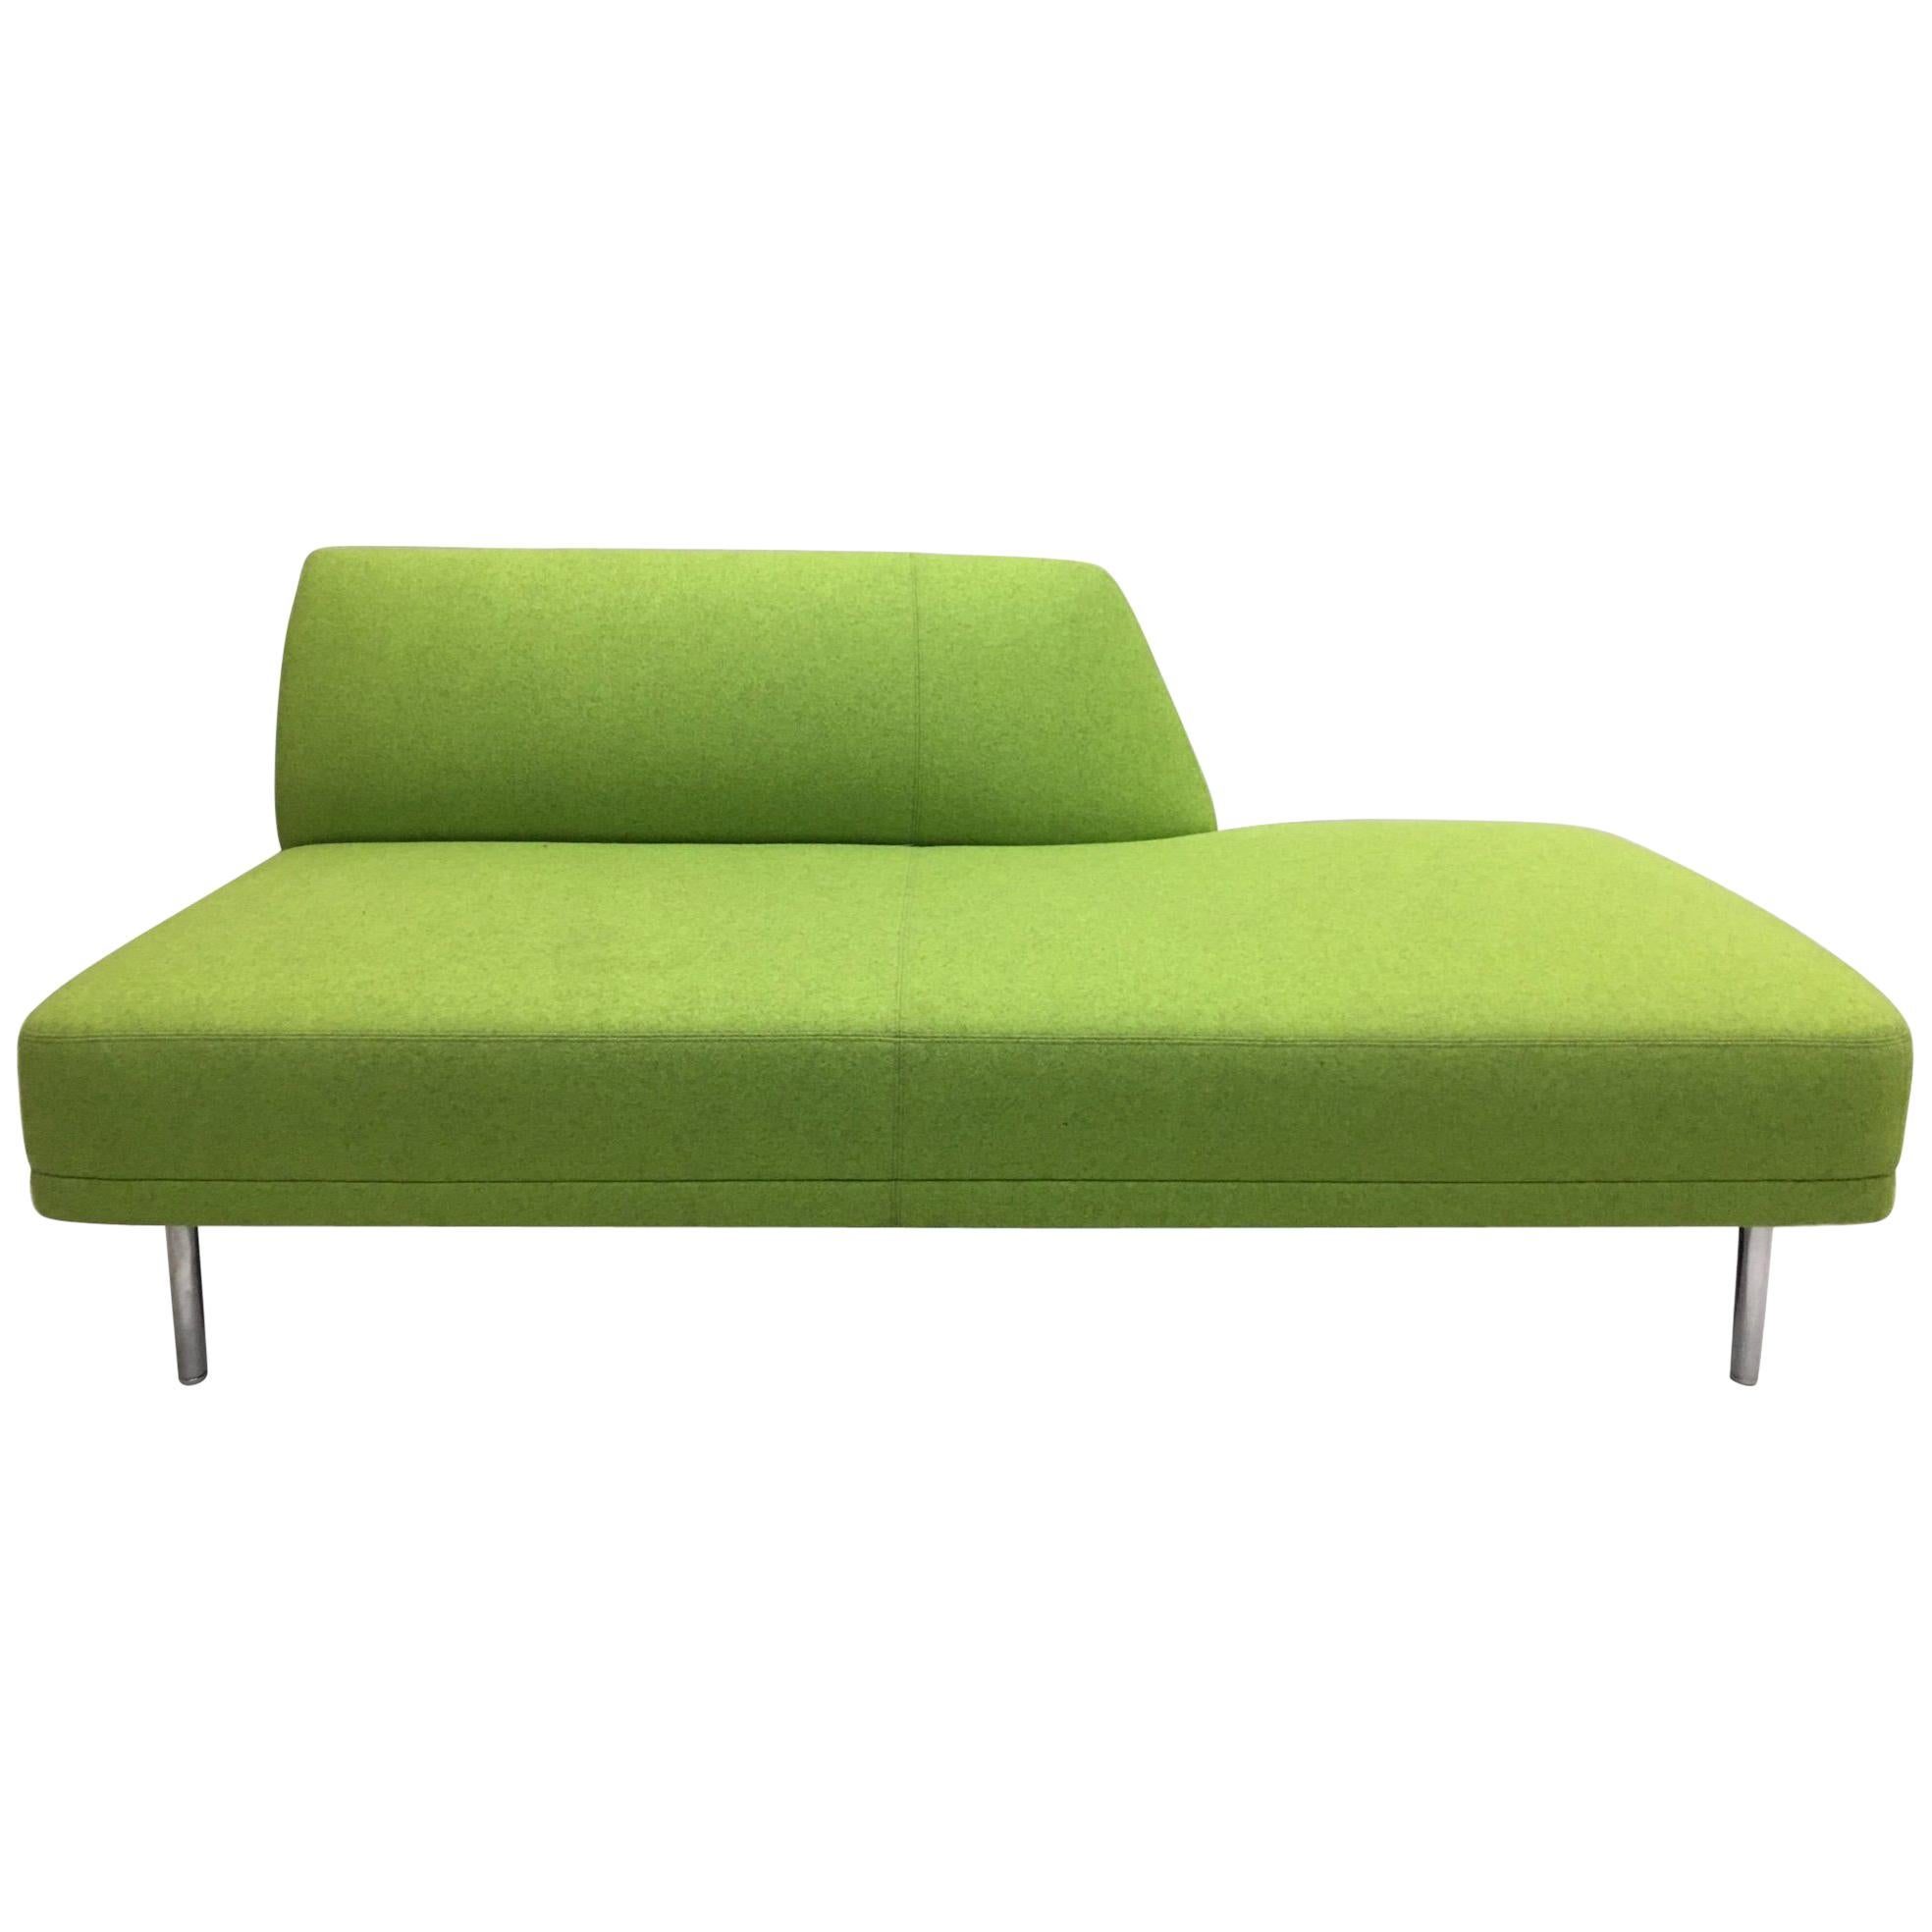 Canapé vert mousse de style italien moderne du milieu du siècle, siège d'amour, style Marco Zanuso